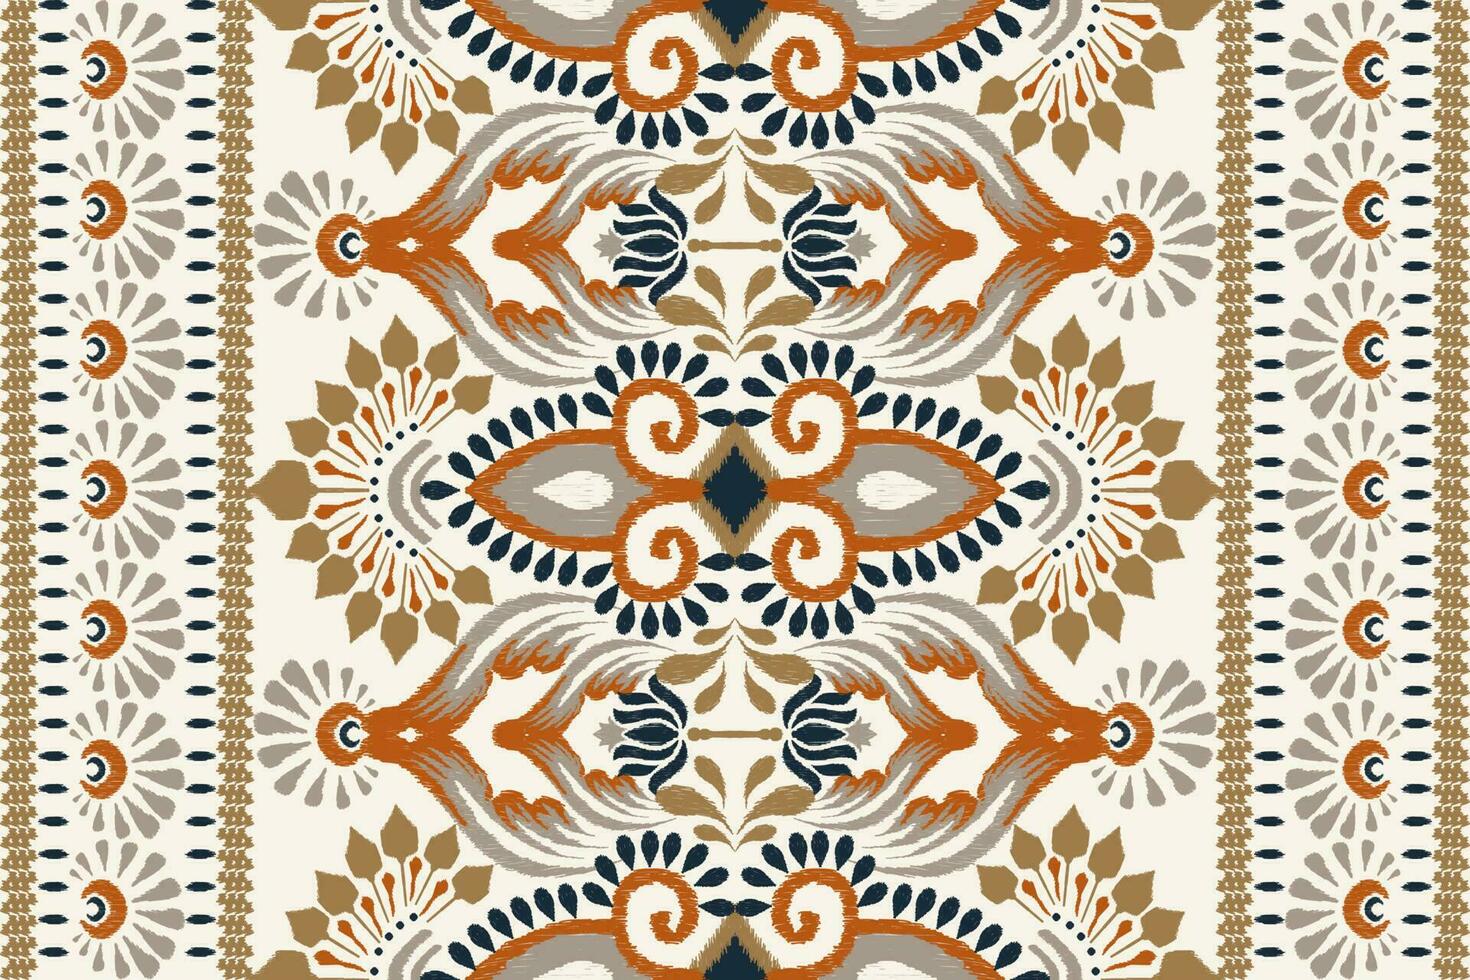 ikat bloemen paisley borduurwerk Aan wit achtergrond.ikat etnisch oosters patroon traditioneel.azteken stijl abstract vector illustratie.ontwerp voor textuur,stof,kleding,verpakking,decoratie,tapijt,sjaal